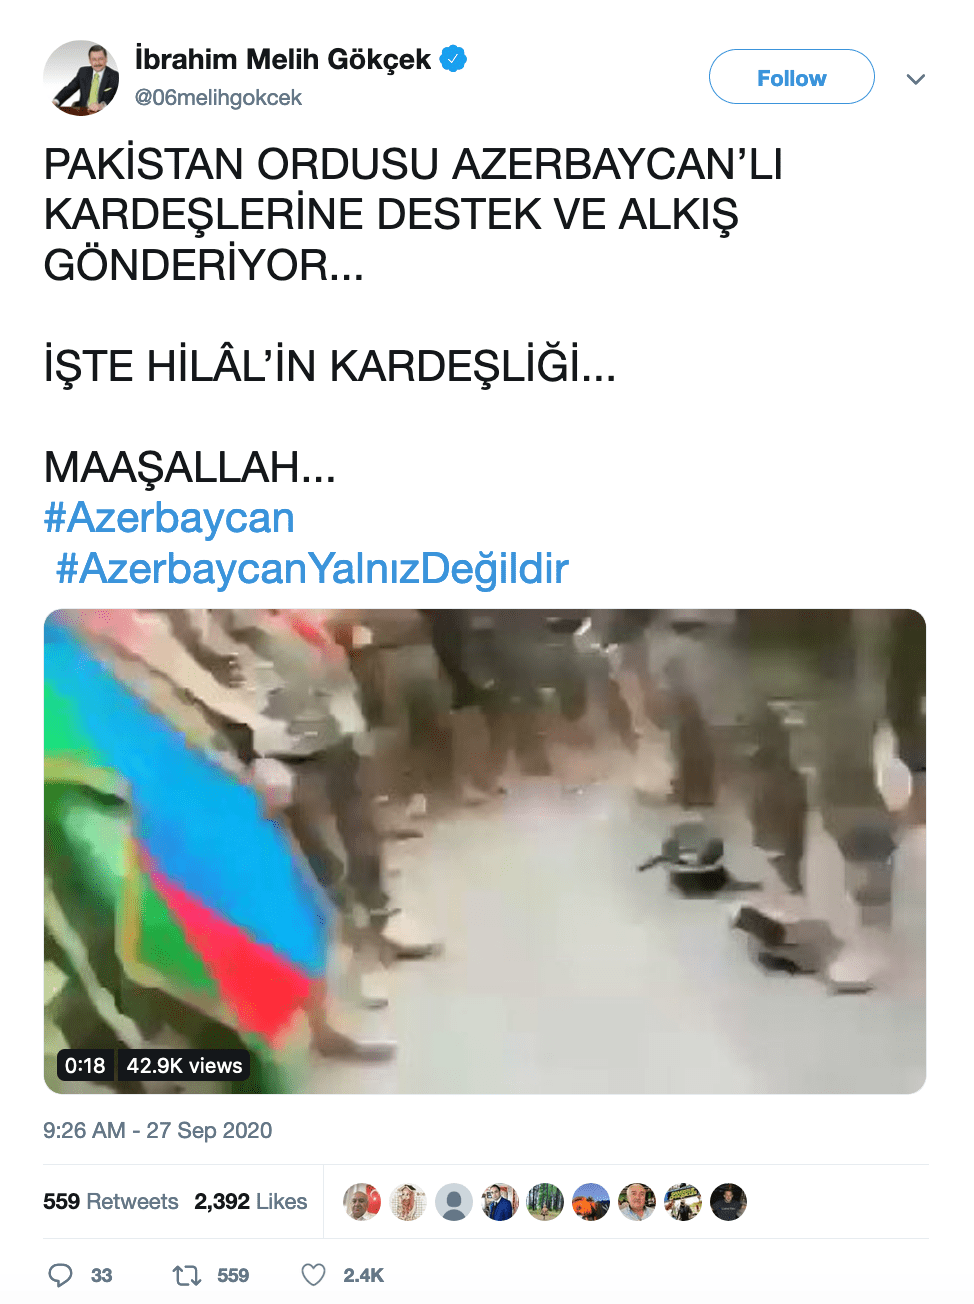 videonun 27 eylul catismasinda pakistanin azerbaycana destegini gosterdigi iddiasi 1